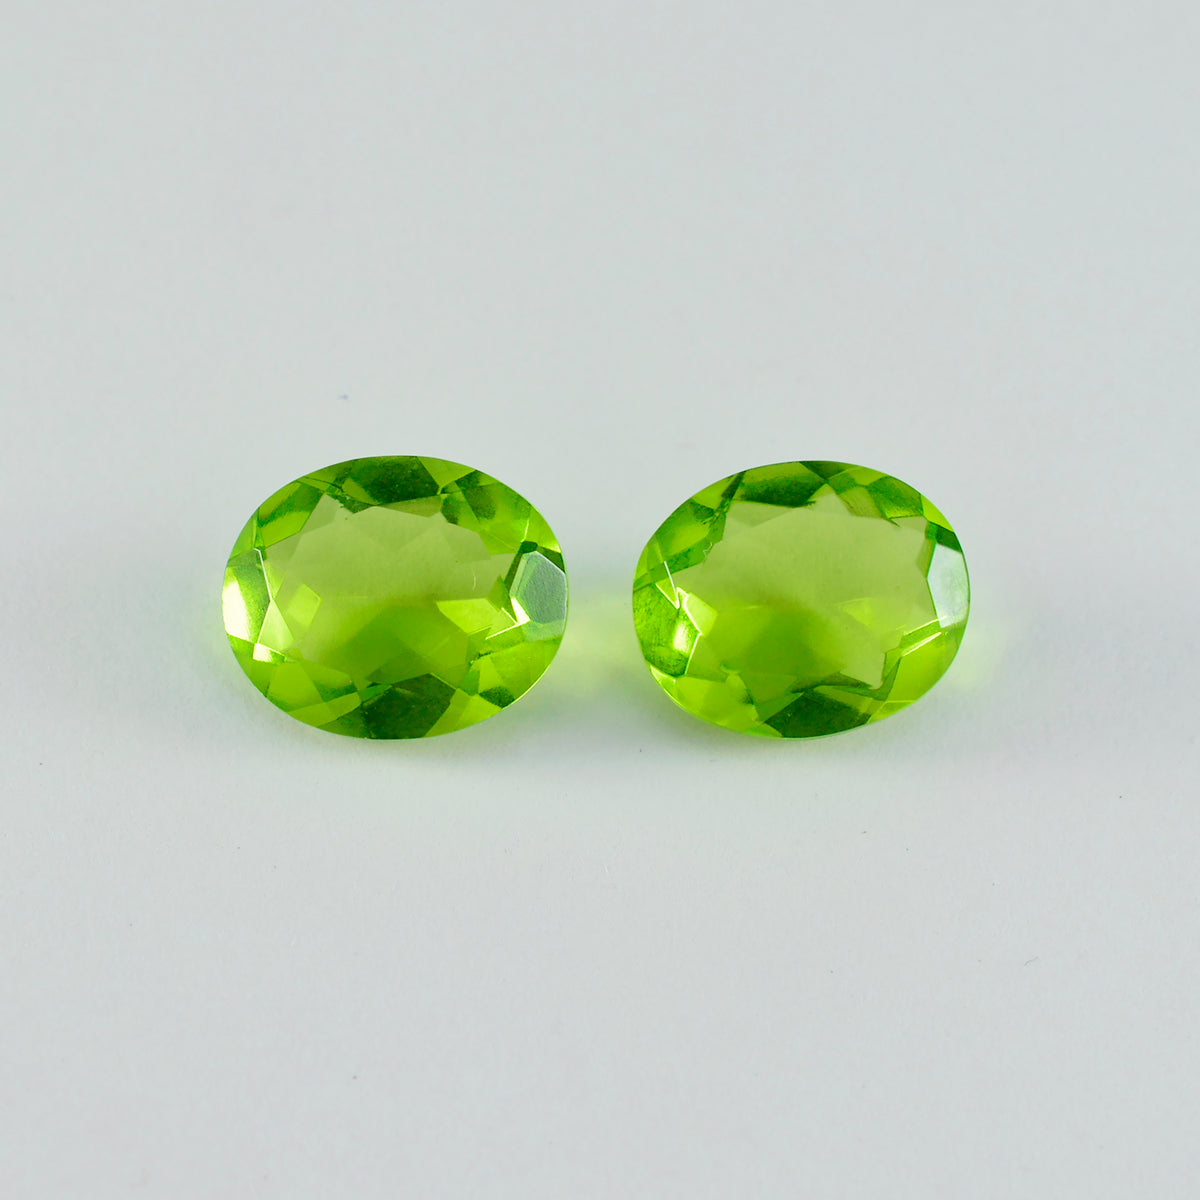 riyogems 1 шт. зеленый перидот cz граненый 10x14 мм драгоценный камень овальной формы прекрасного качества